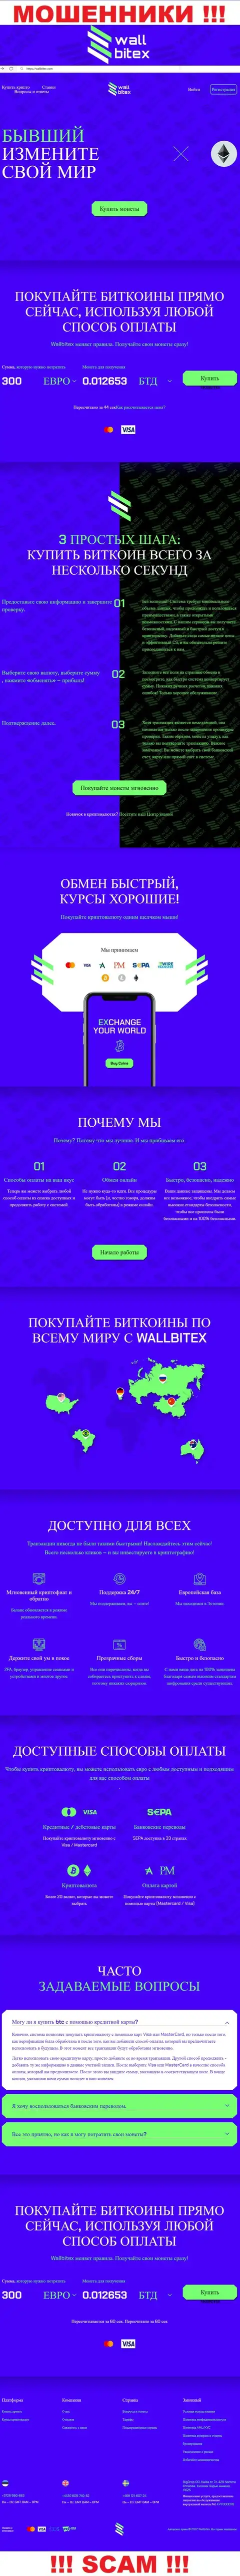 WallBitex Com - это официальный сайт противозаконно действующей организации WallBitex